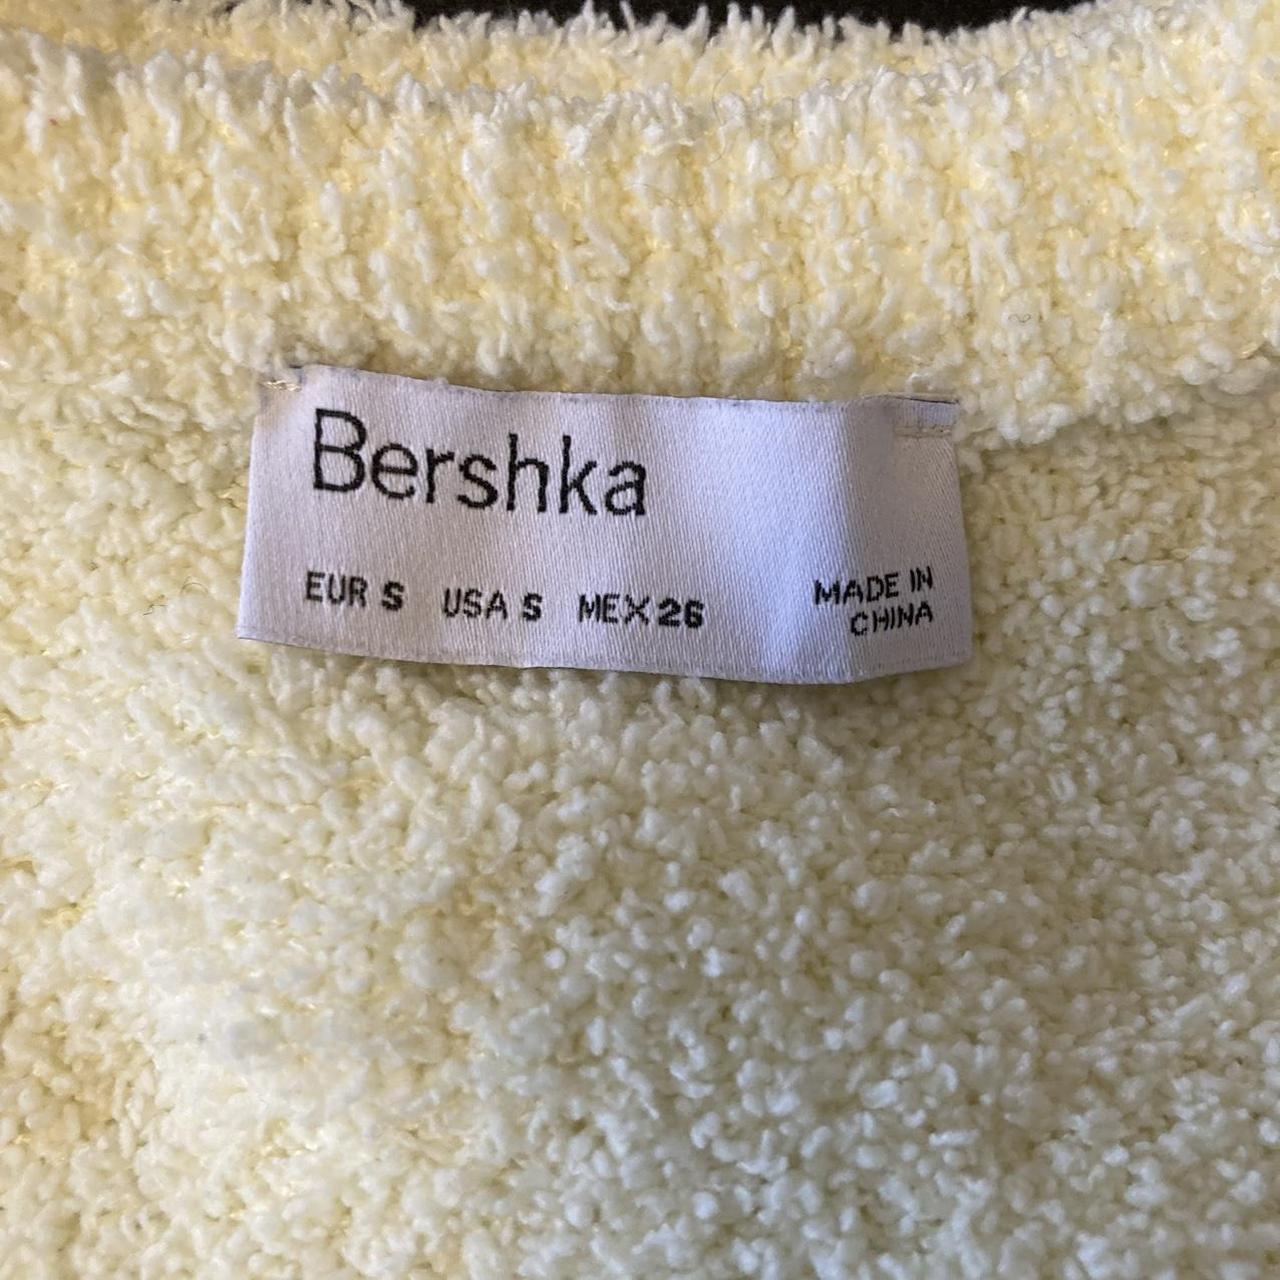 bershka off white/ cream fuzzy crop top tie back,... - Depop